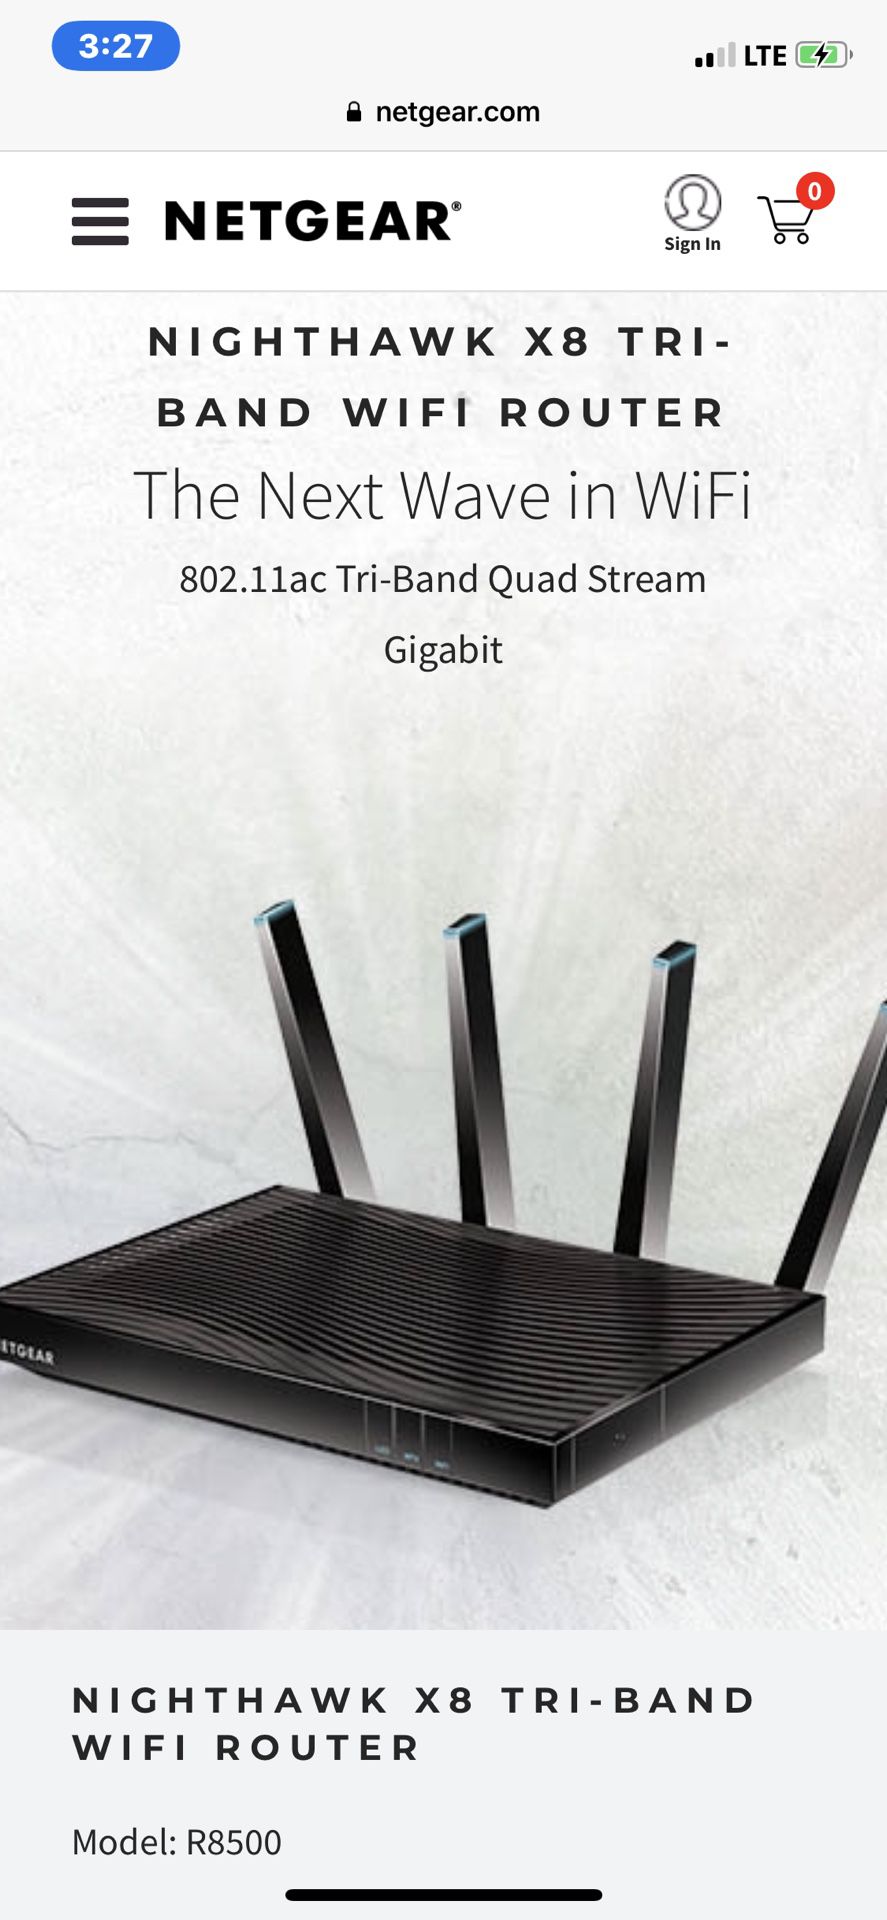 Nighthawk X8 Tri-Band WiFi Router